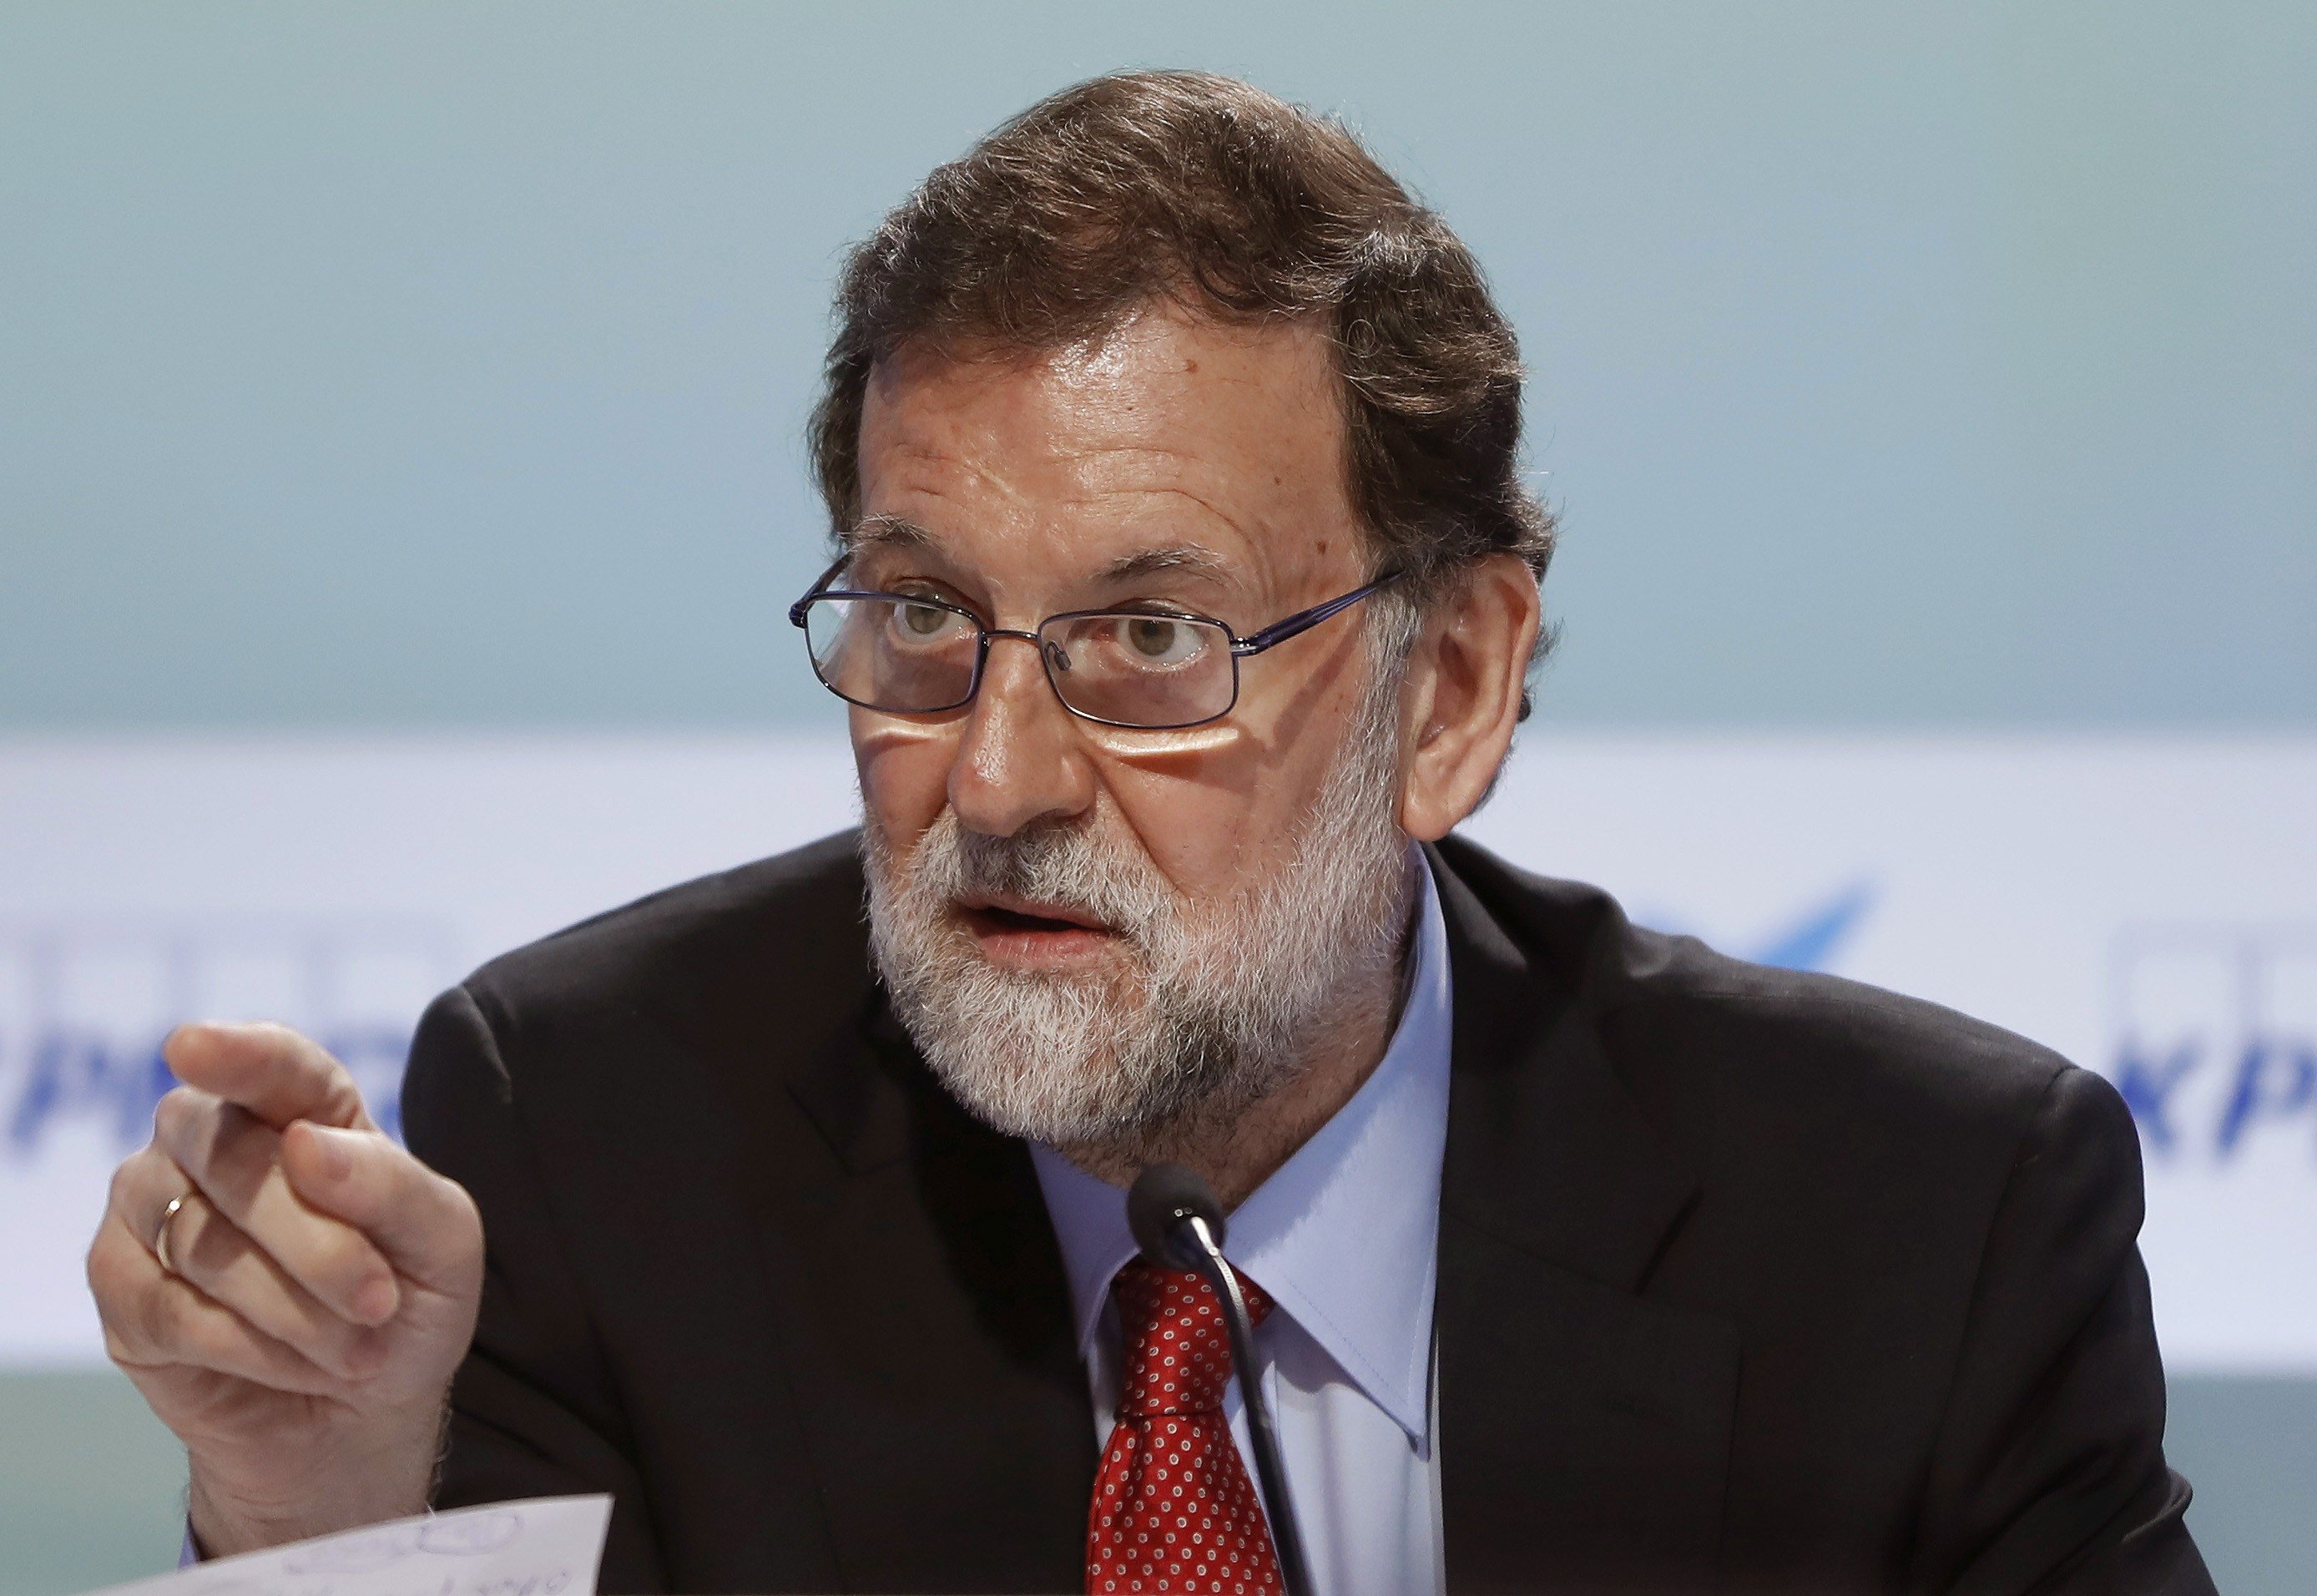 VÍDEO: Rajoy ja va posar en dubte el canvi climàtic quan era candidat